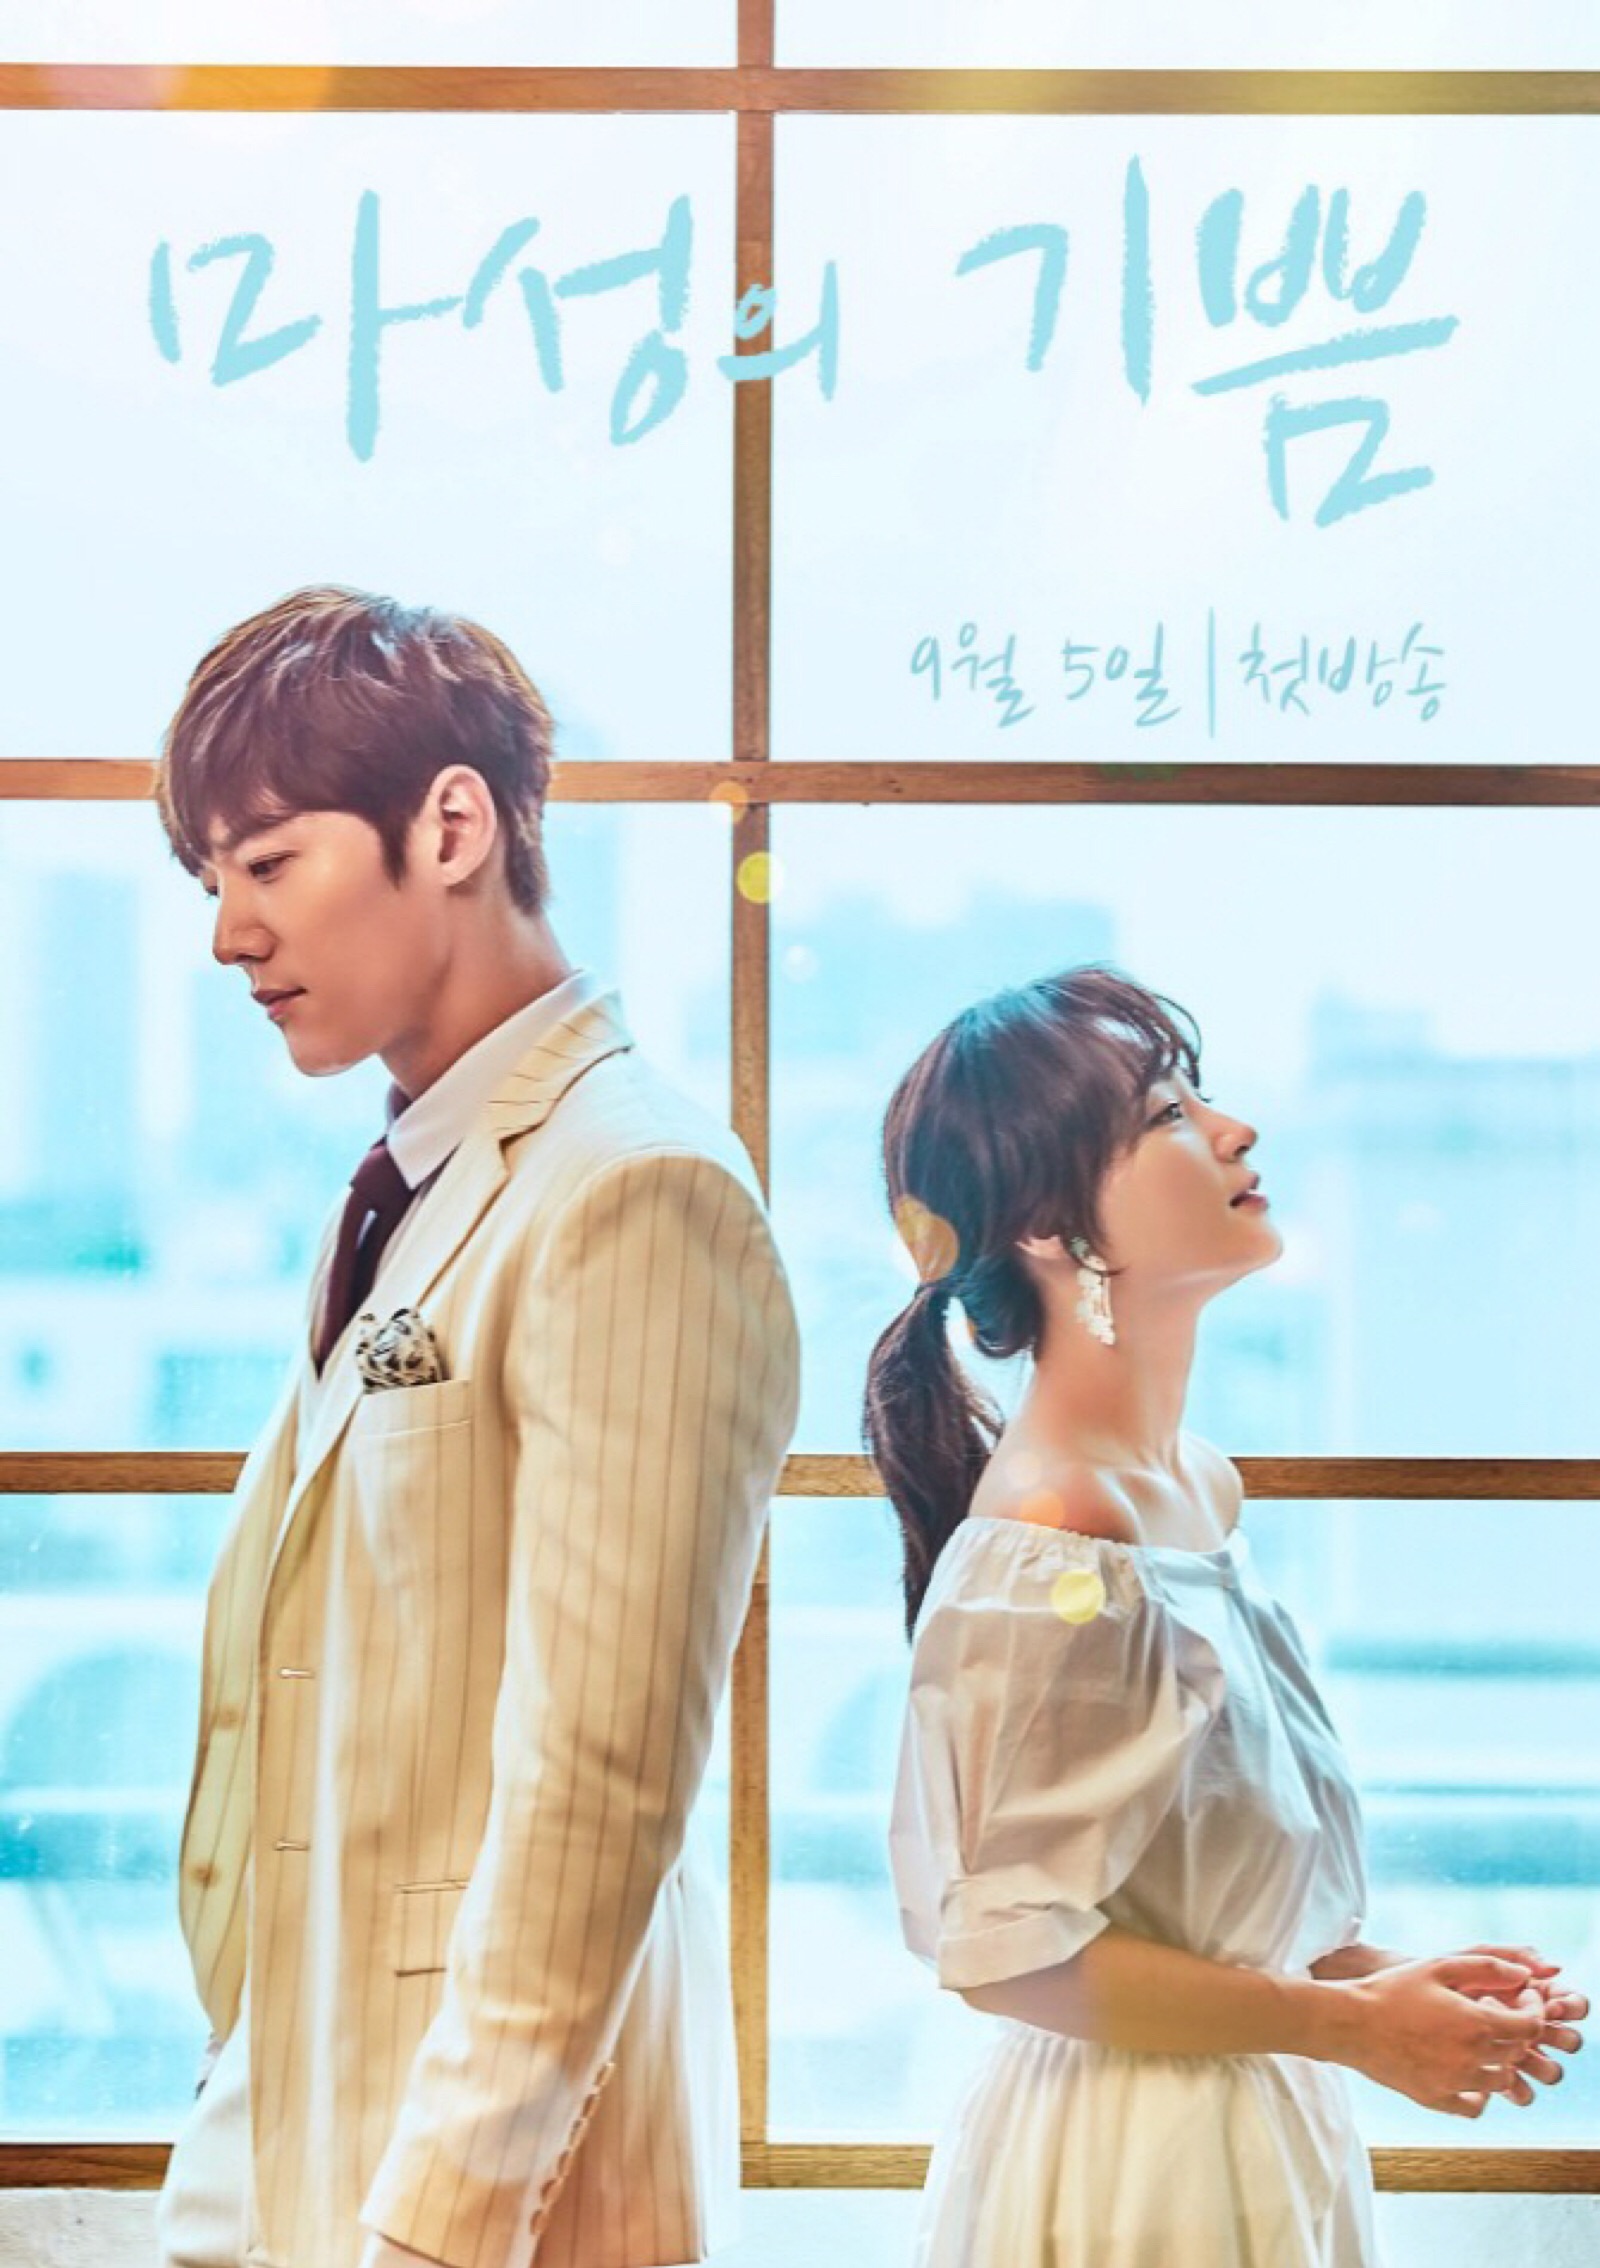 《马成的喜悦》是韩国mbn电视台发行的浪漫爱情连续剧,由金佳蓝执导